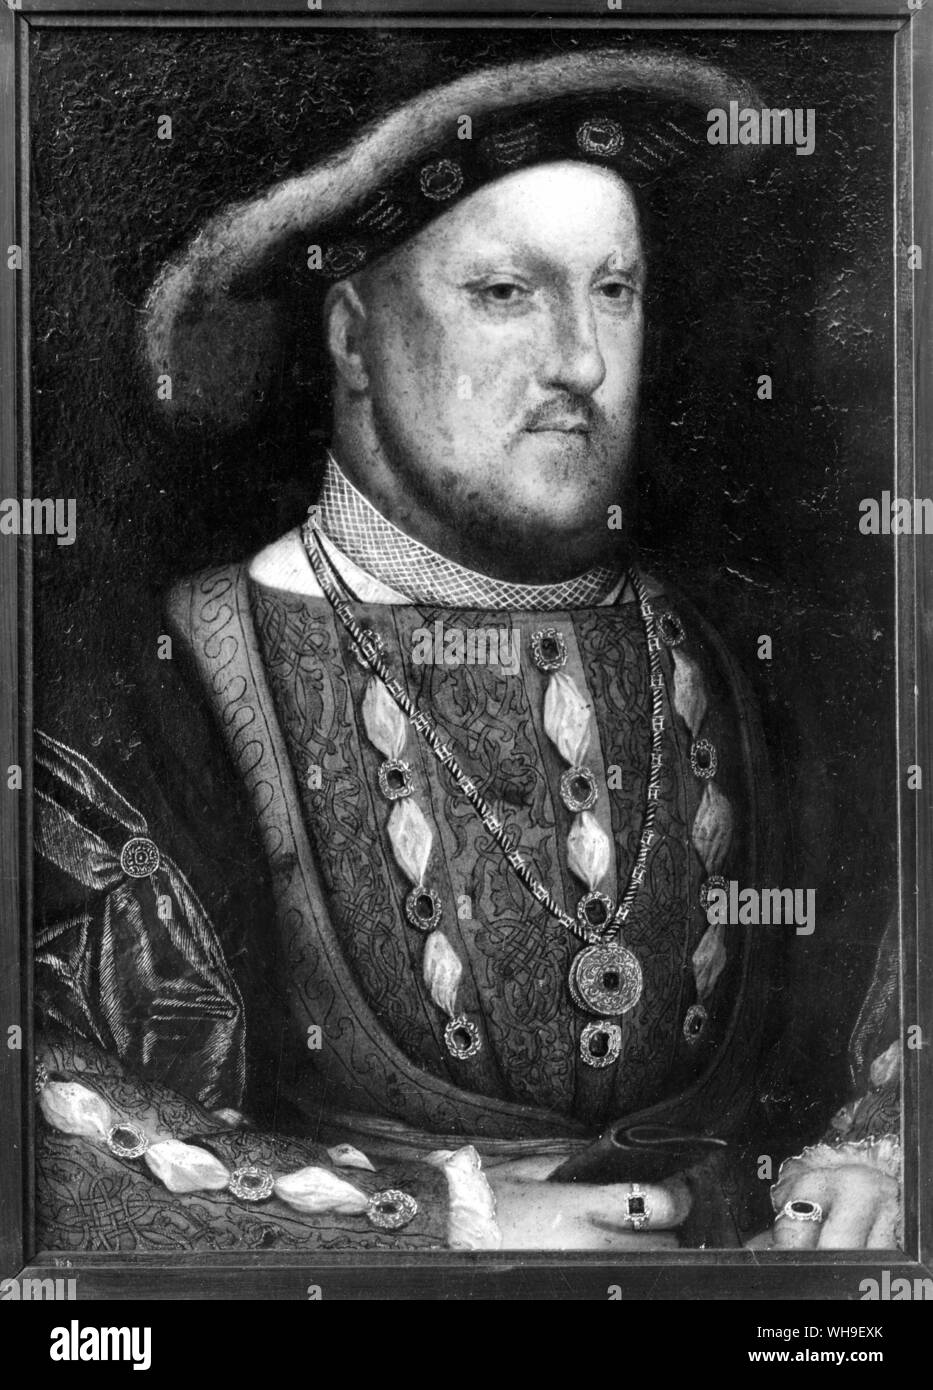 König Henry VIII (1491-1547), König von 1509. Gemälde von Holbein. Stockfoto